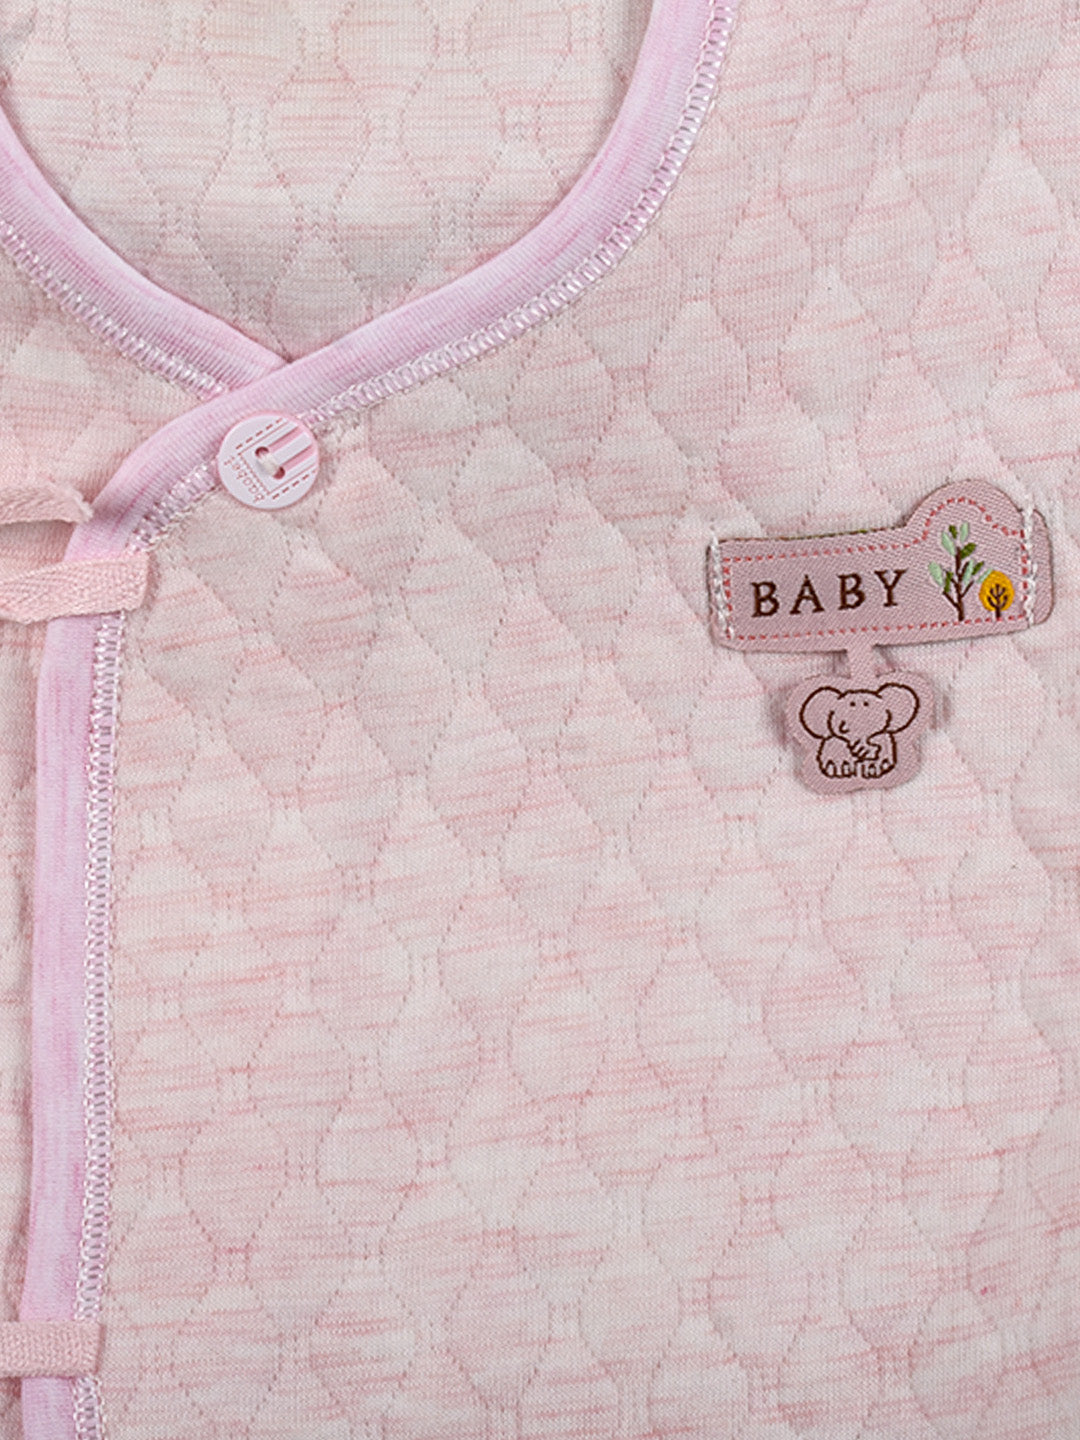 Newborn Baby's Warm Cotton Gift Set-1 Pajama and 1 Shirt- Pink